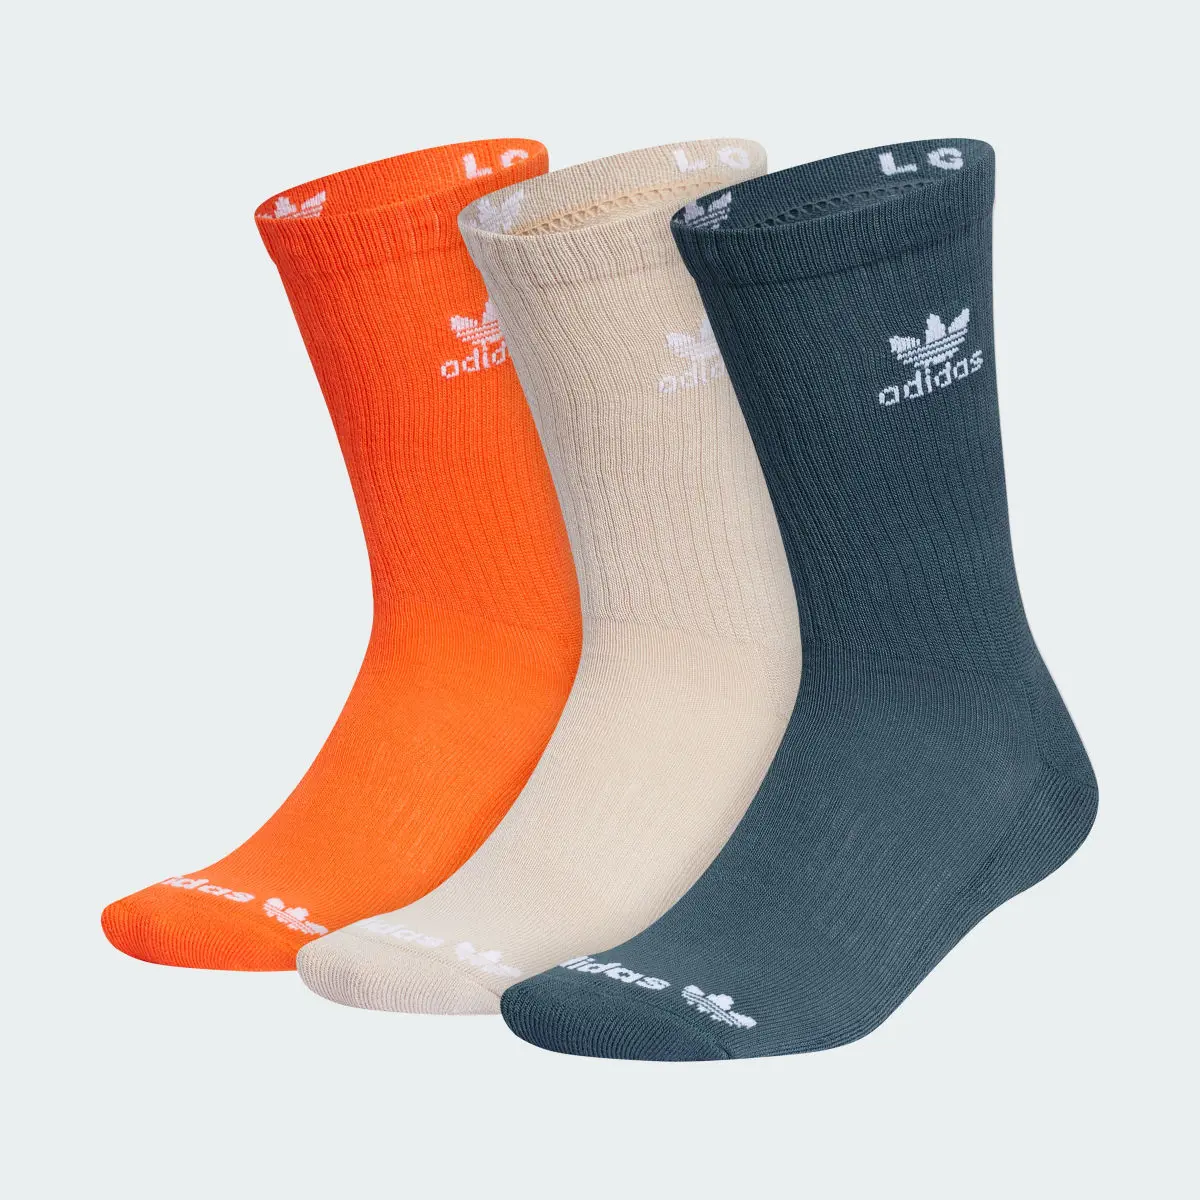 Adidas Trefoil Crew Socks 3 Pairs. 2